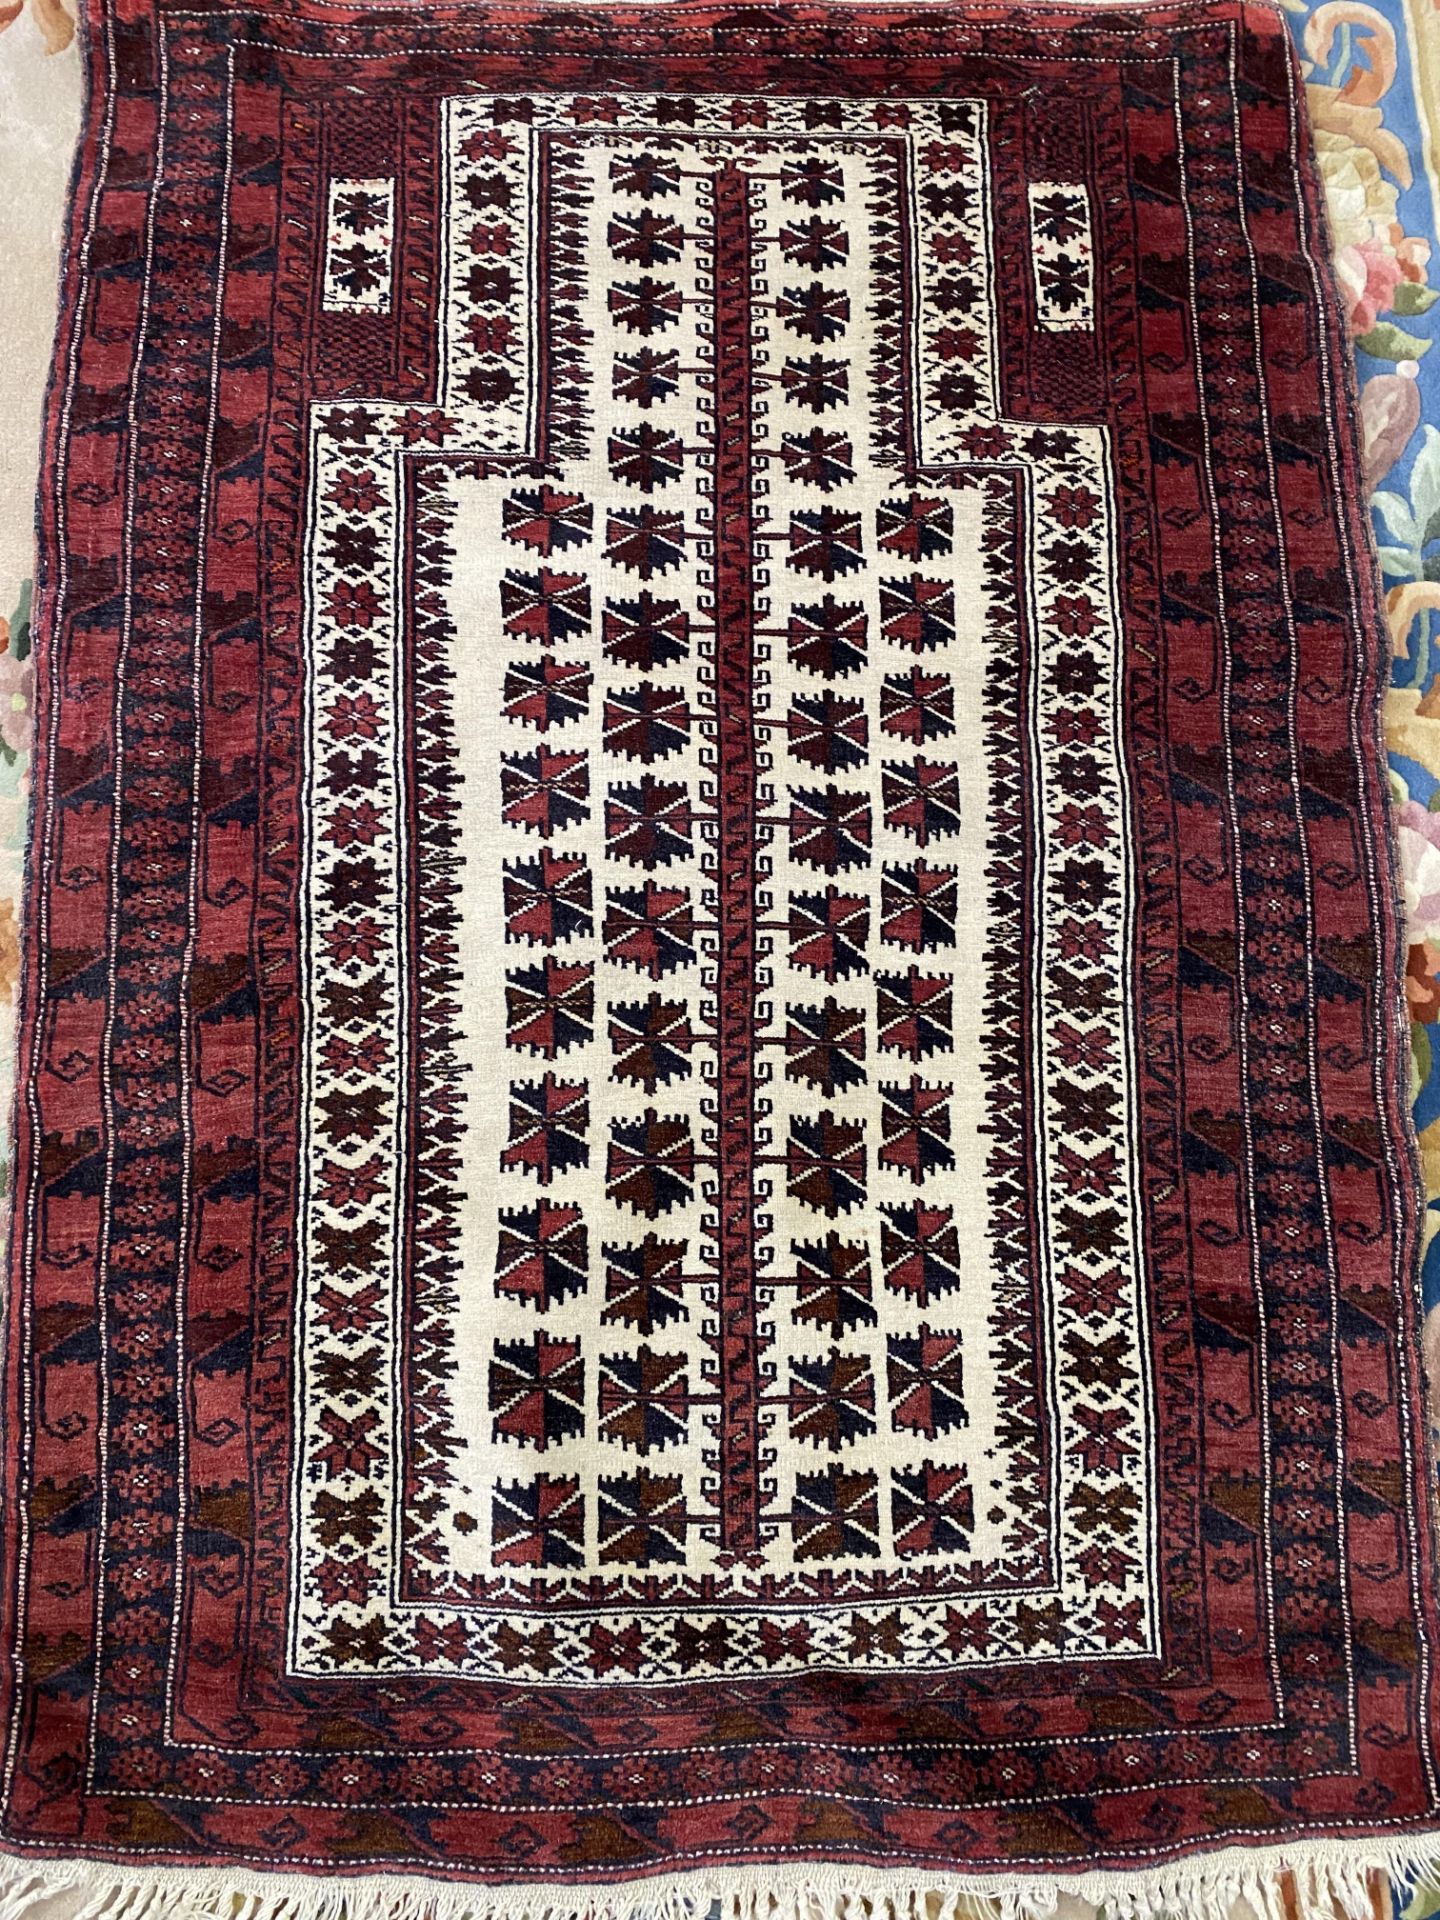 Kayam afgan red wool rug - Image 2 of 3